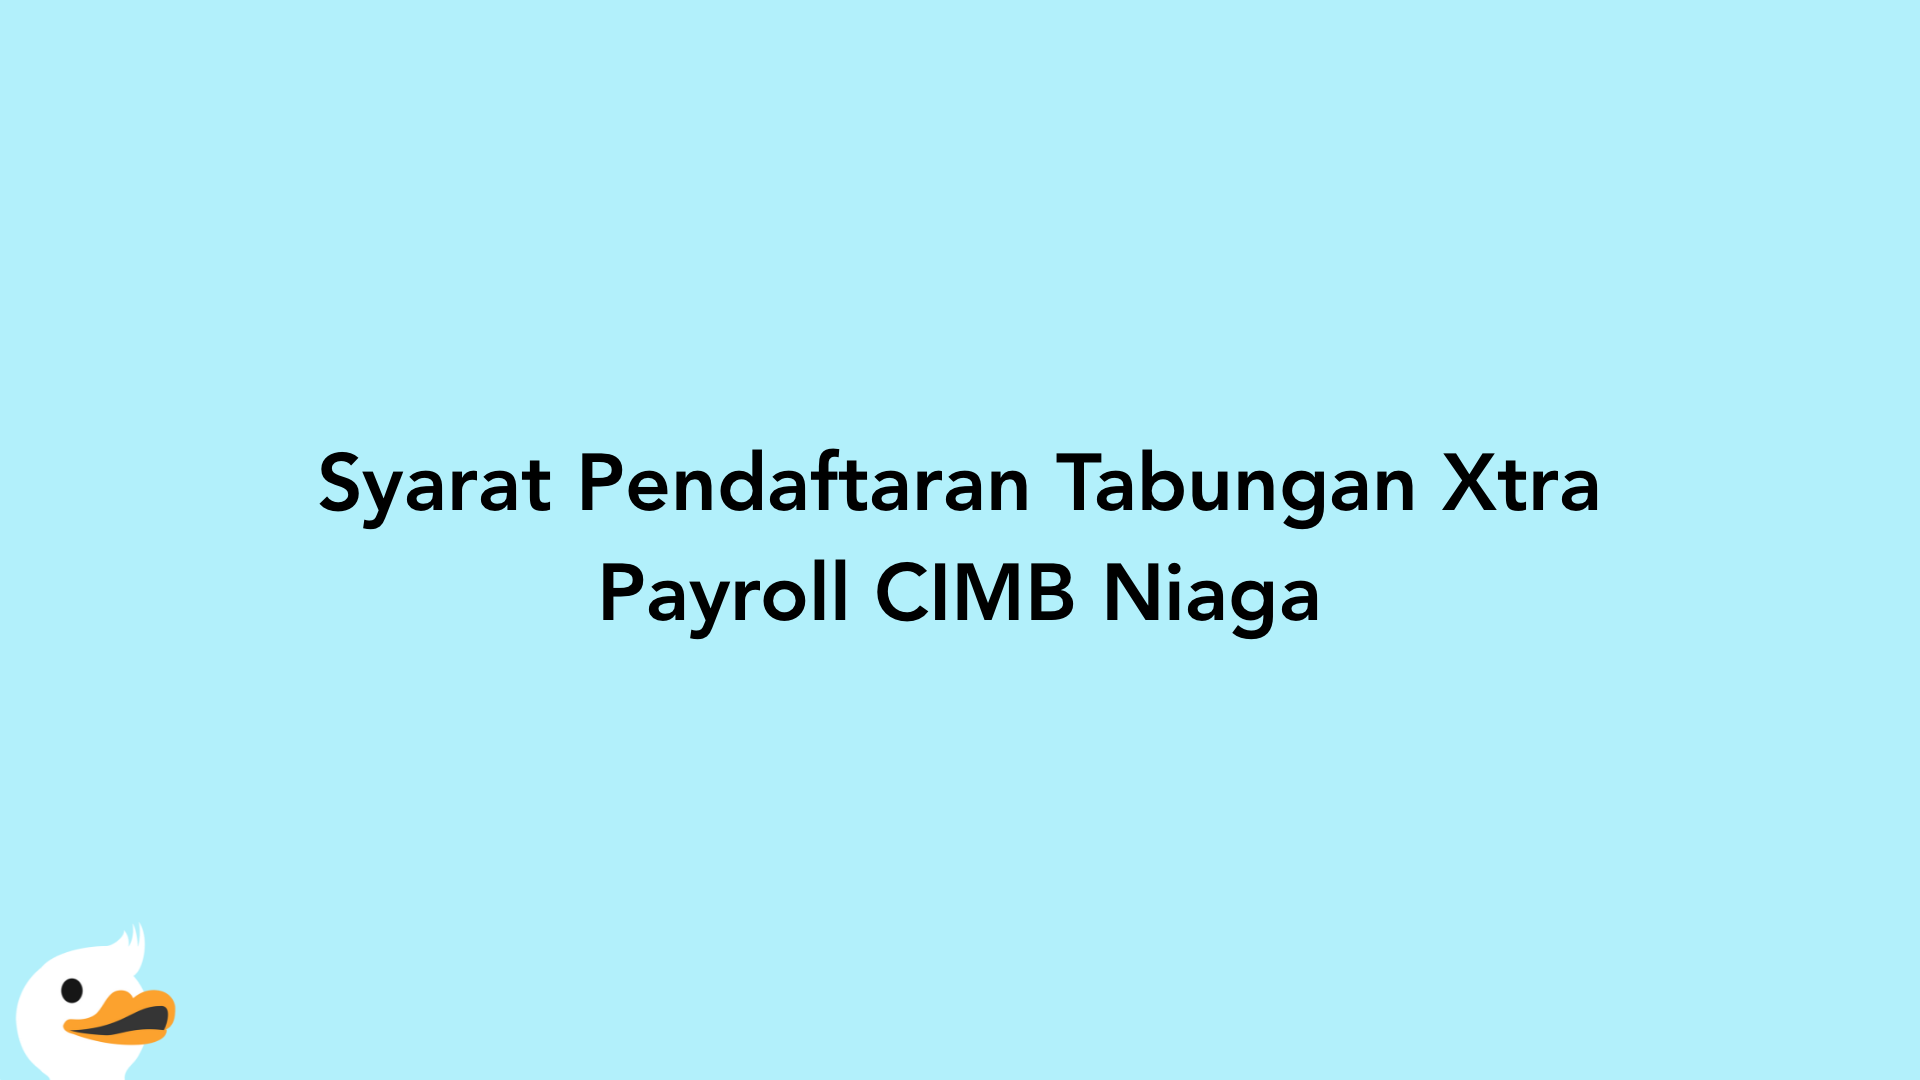 Syarat Pendaftaran Tabungan Xtra Payroll CIMB Niaga